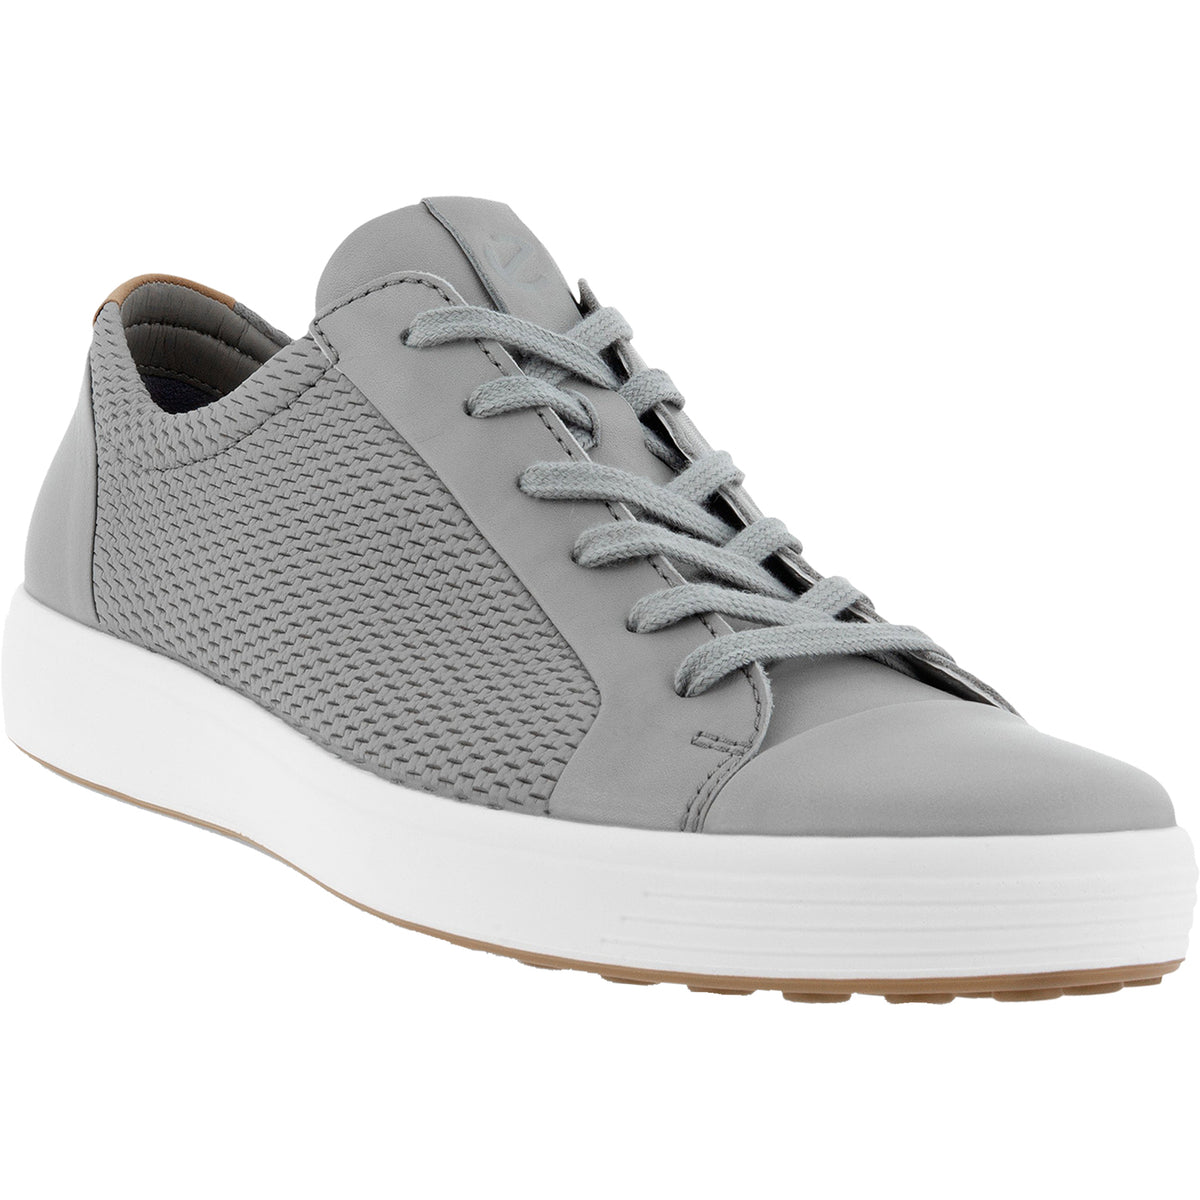 Ecco Soft 7 City Sneaker Wild Dove | Men's Sneakers | Footwear etc.